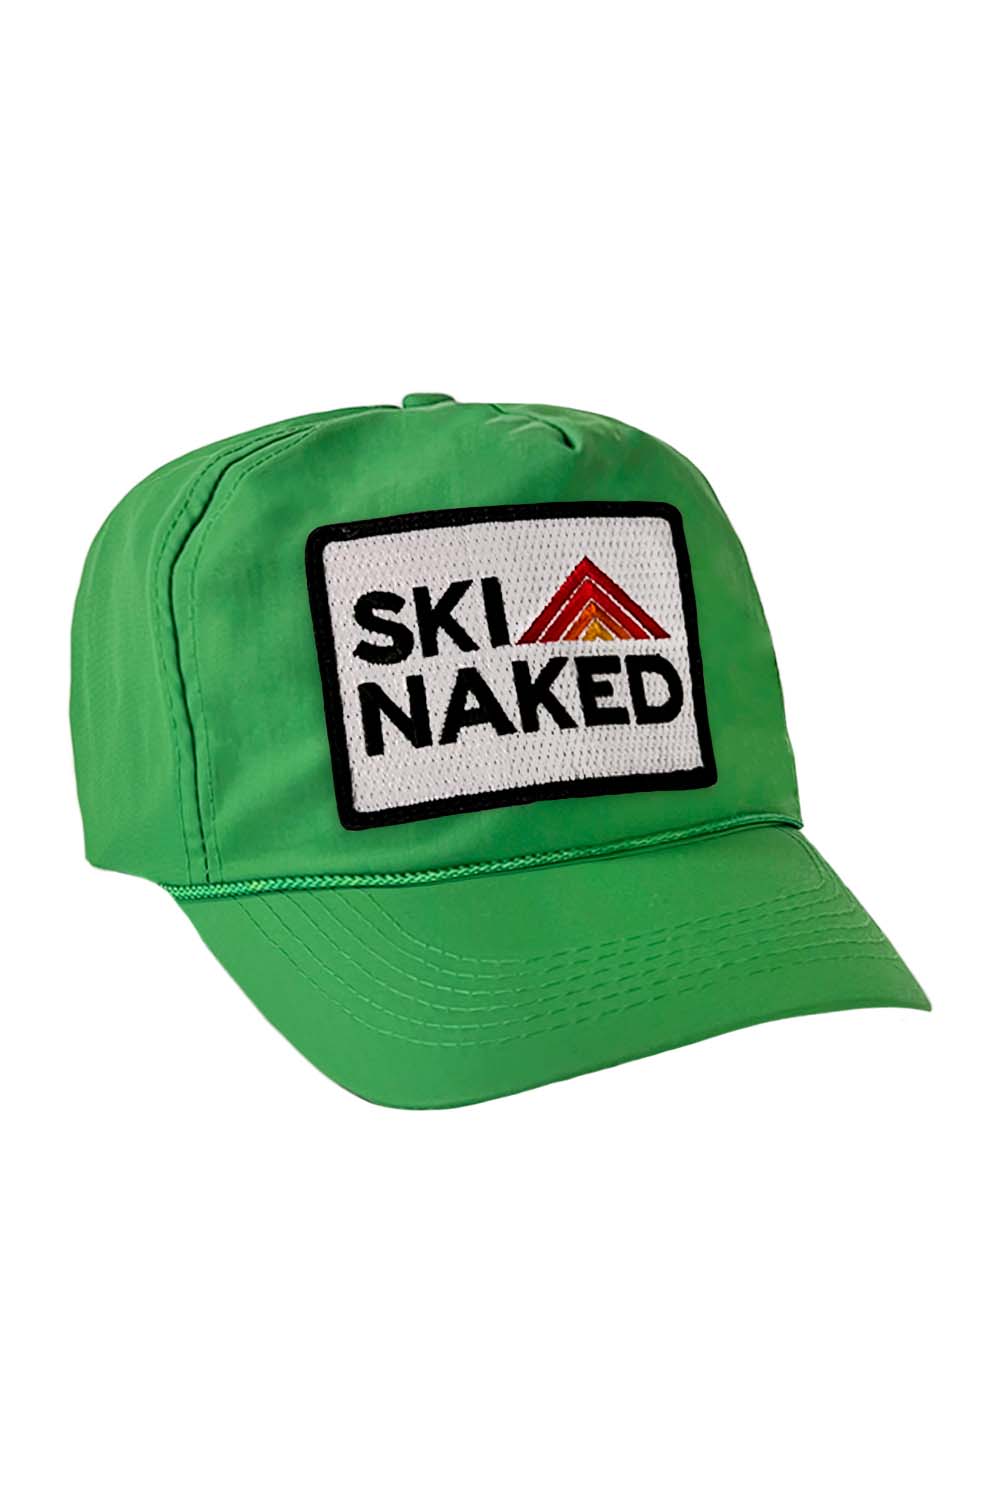 SKI NAKED - VINTAGE NYLON TRUCKER HAT HATS Aviator Nation KELLY GREEN 